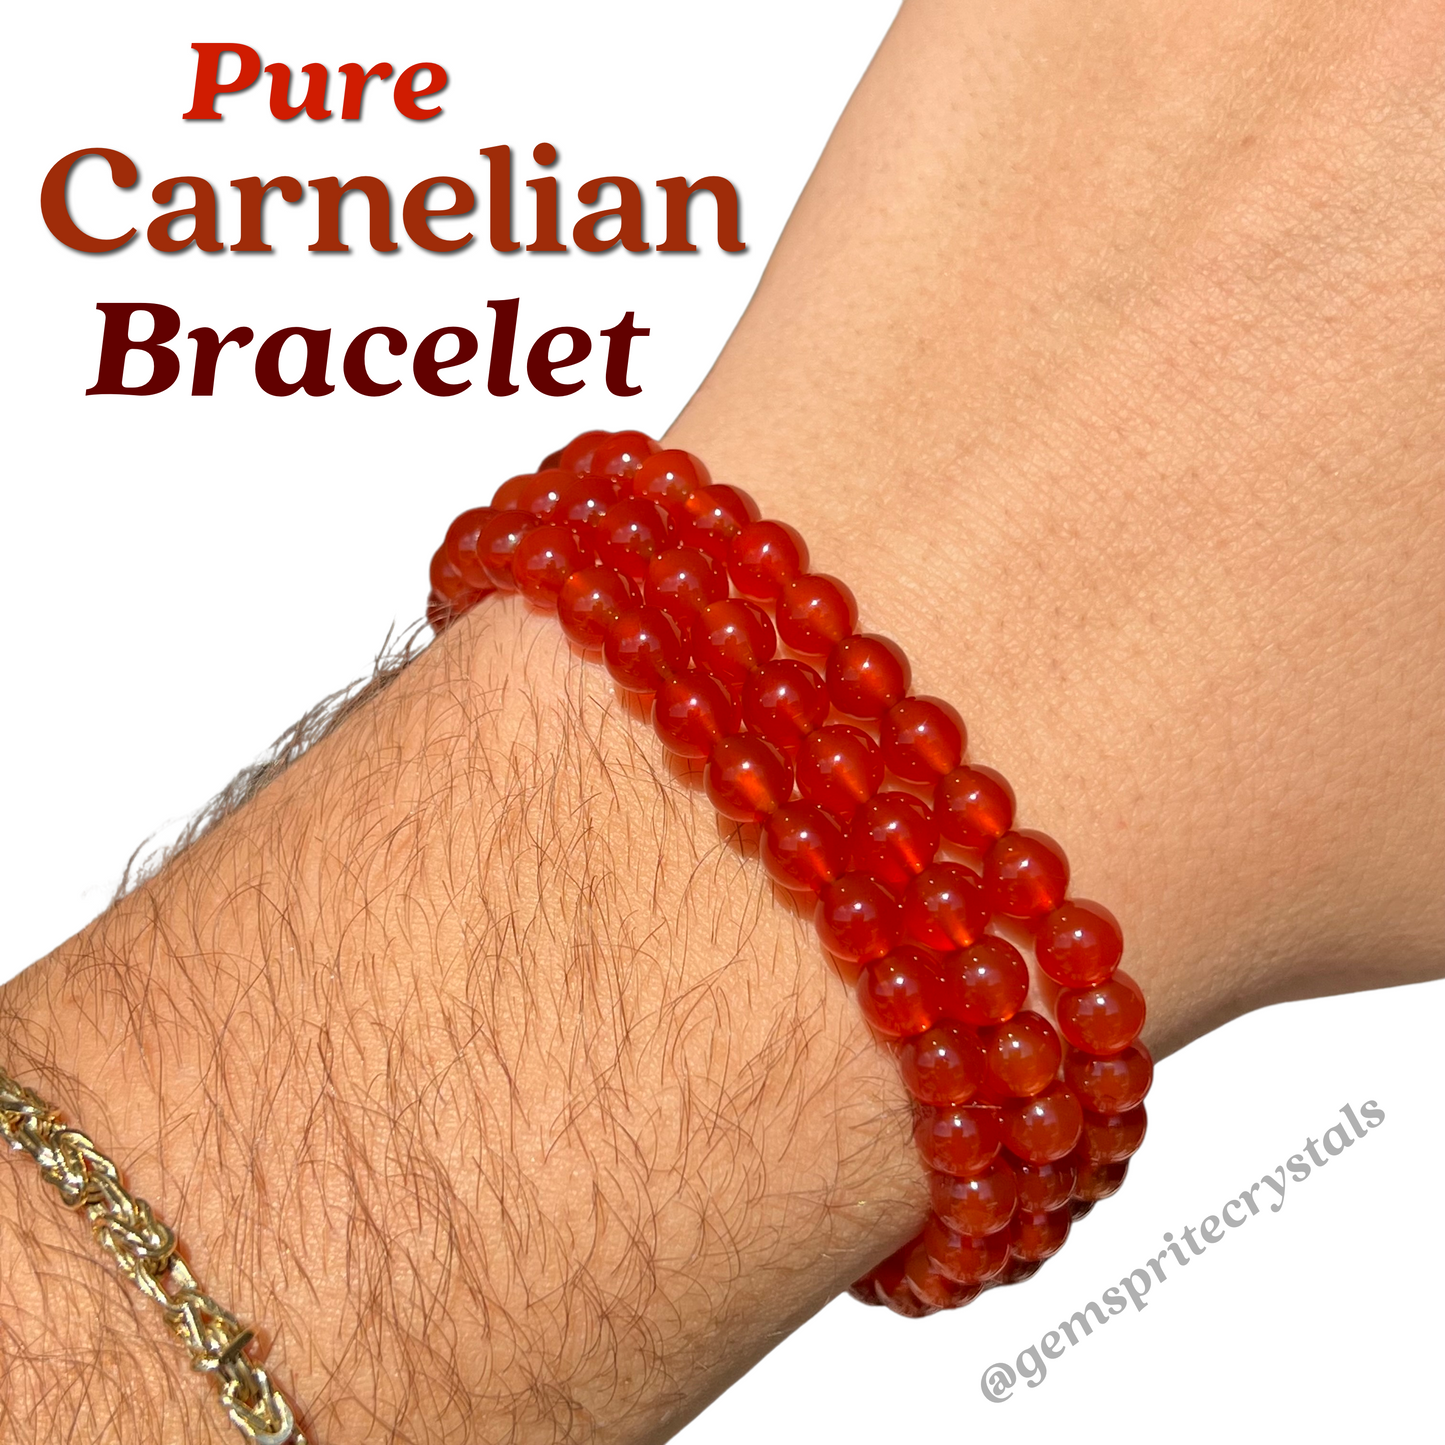 Pure Carnelian Bracelet